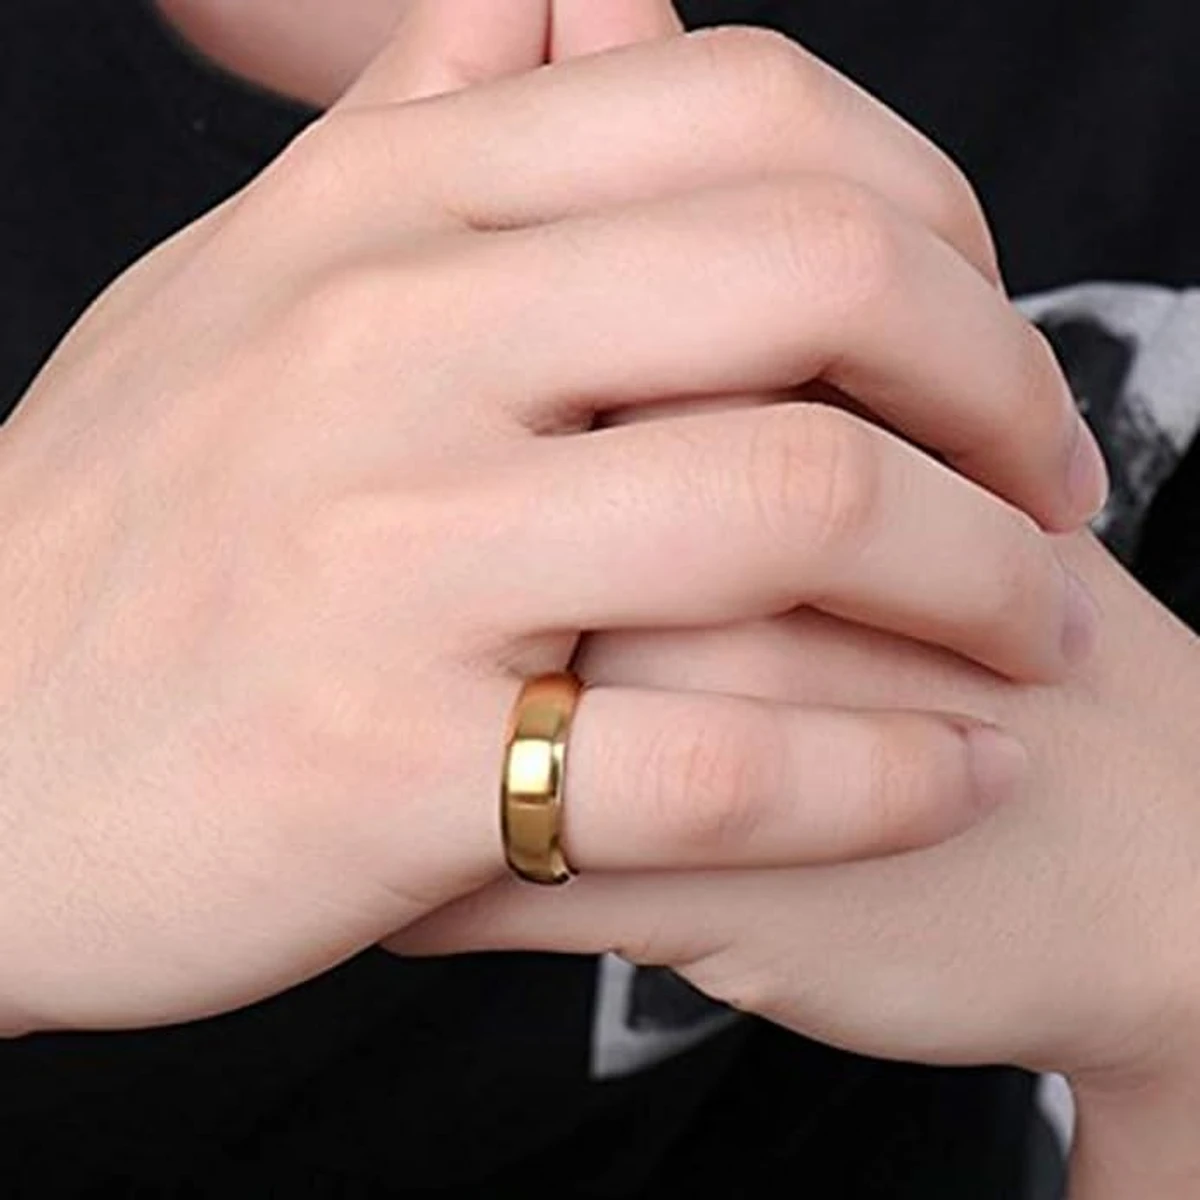 New Ring Portable Finger- Ring For Men And Women